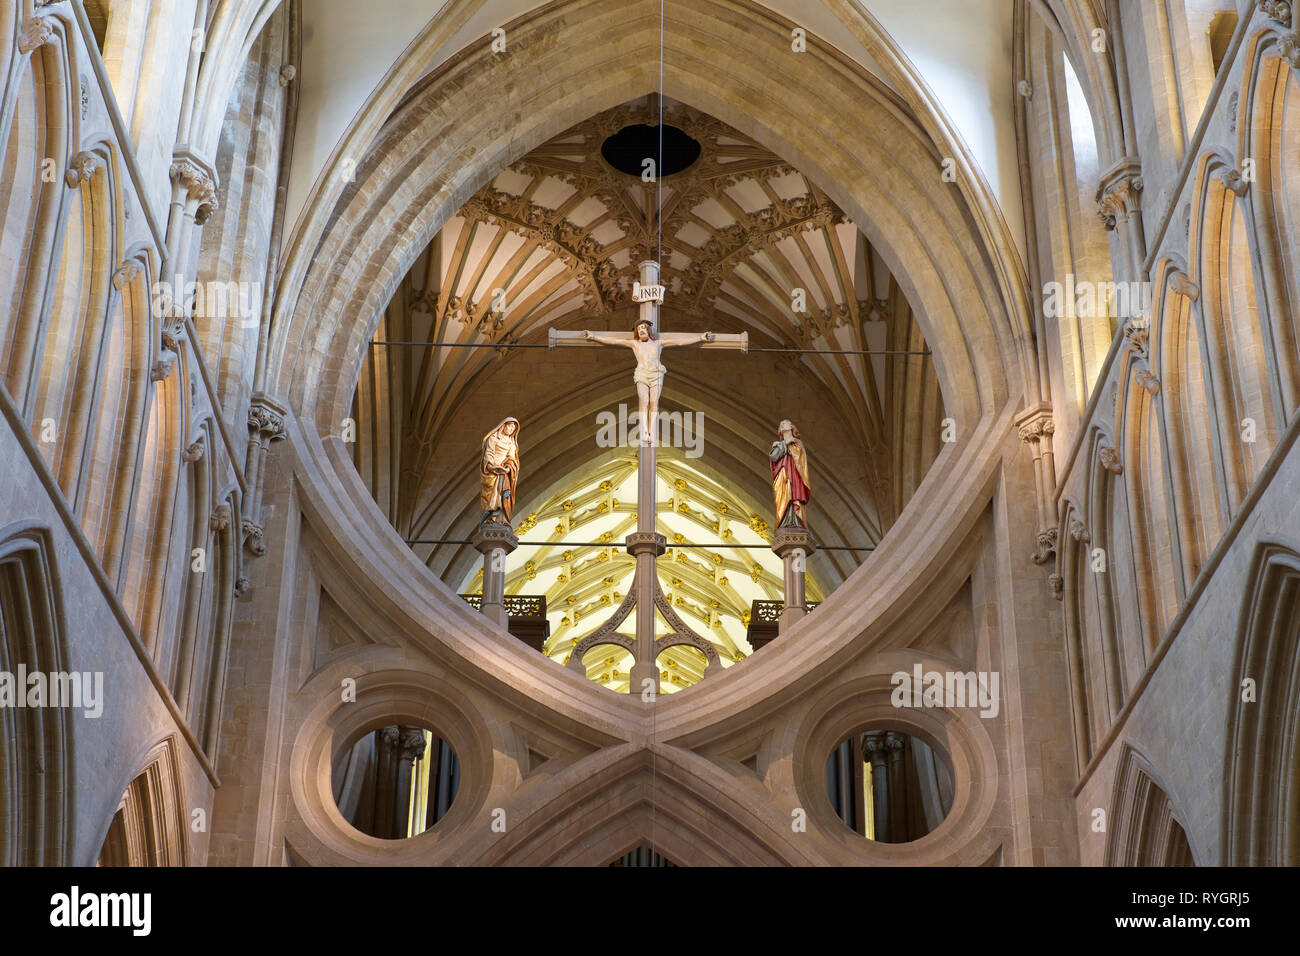 Ein Detail aus dem Kirchenschiff nach oben in Richtung der scissor Bogen mit Statuen von Jesus, der Jungfrau Maria und Maria Magdalena Stockfoto